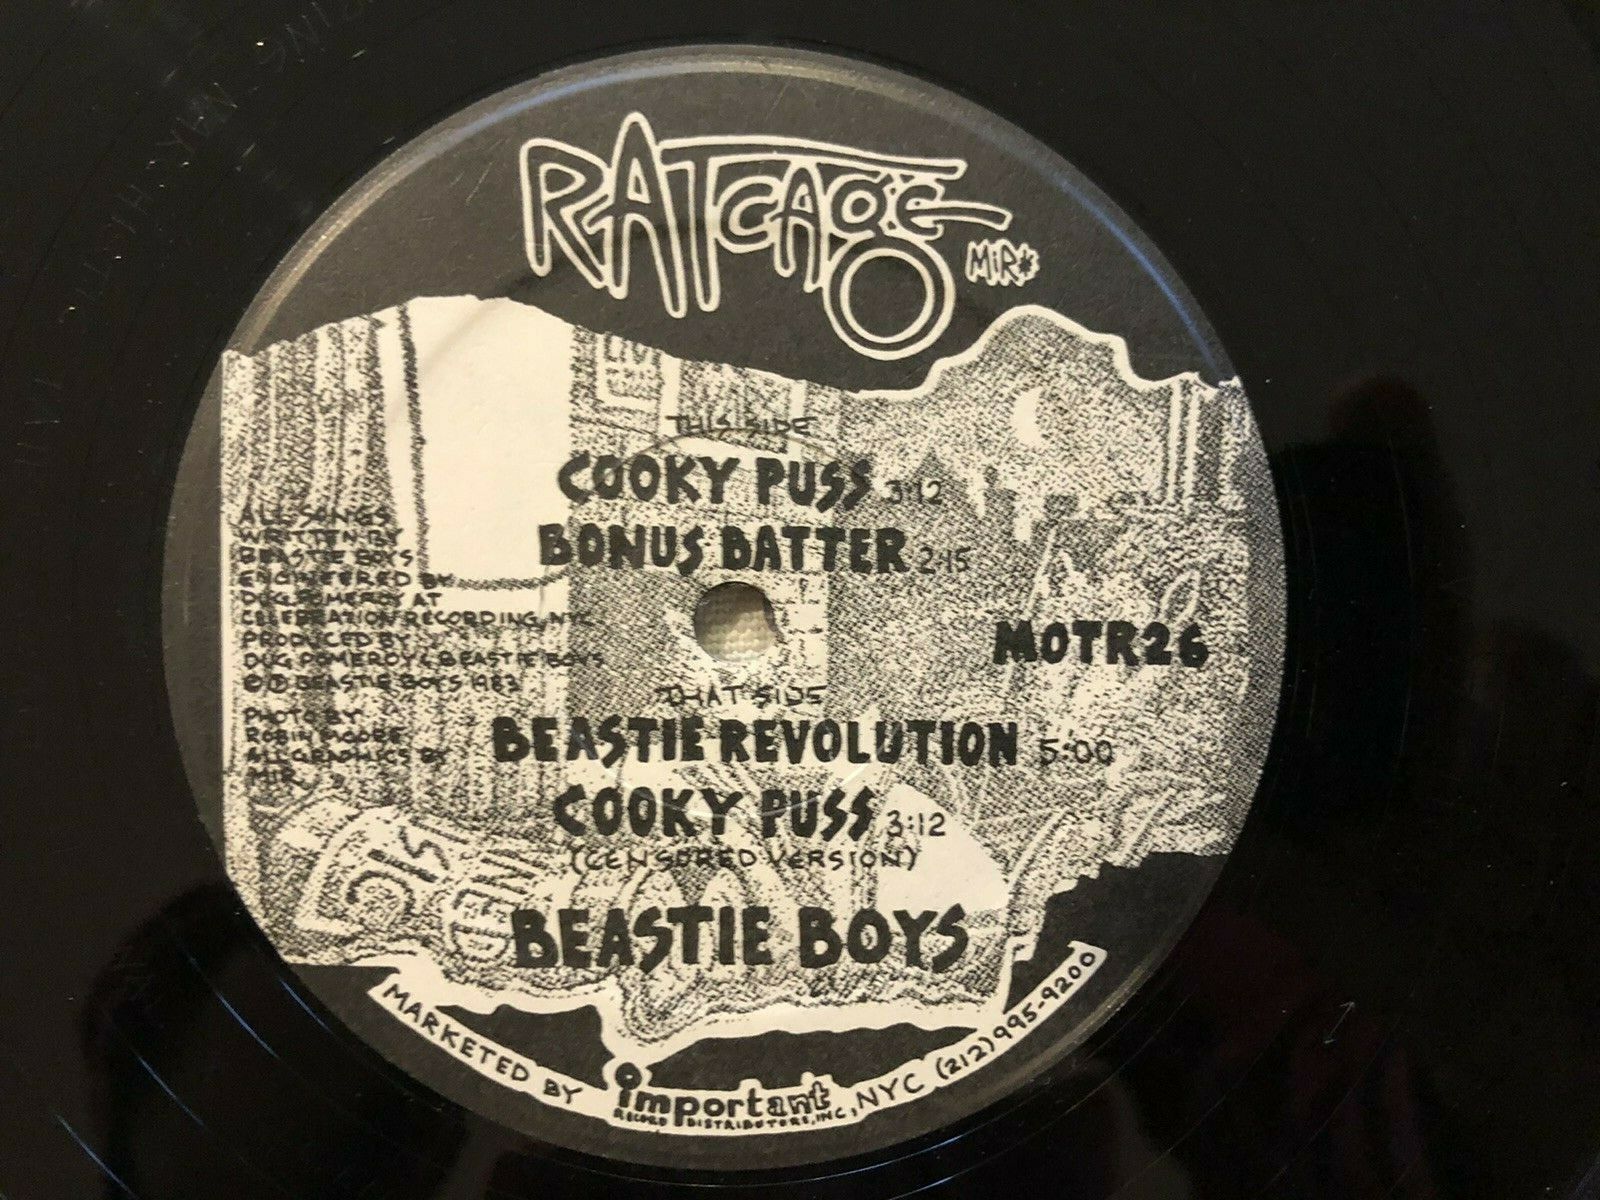 popsike.com - BEASTIE BOYS Cooky Puss Bonus - RAT CAGE Important Records -  Vinyl 12" Single - auction details